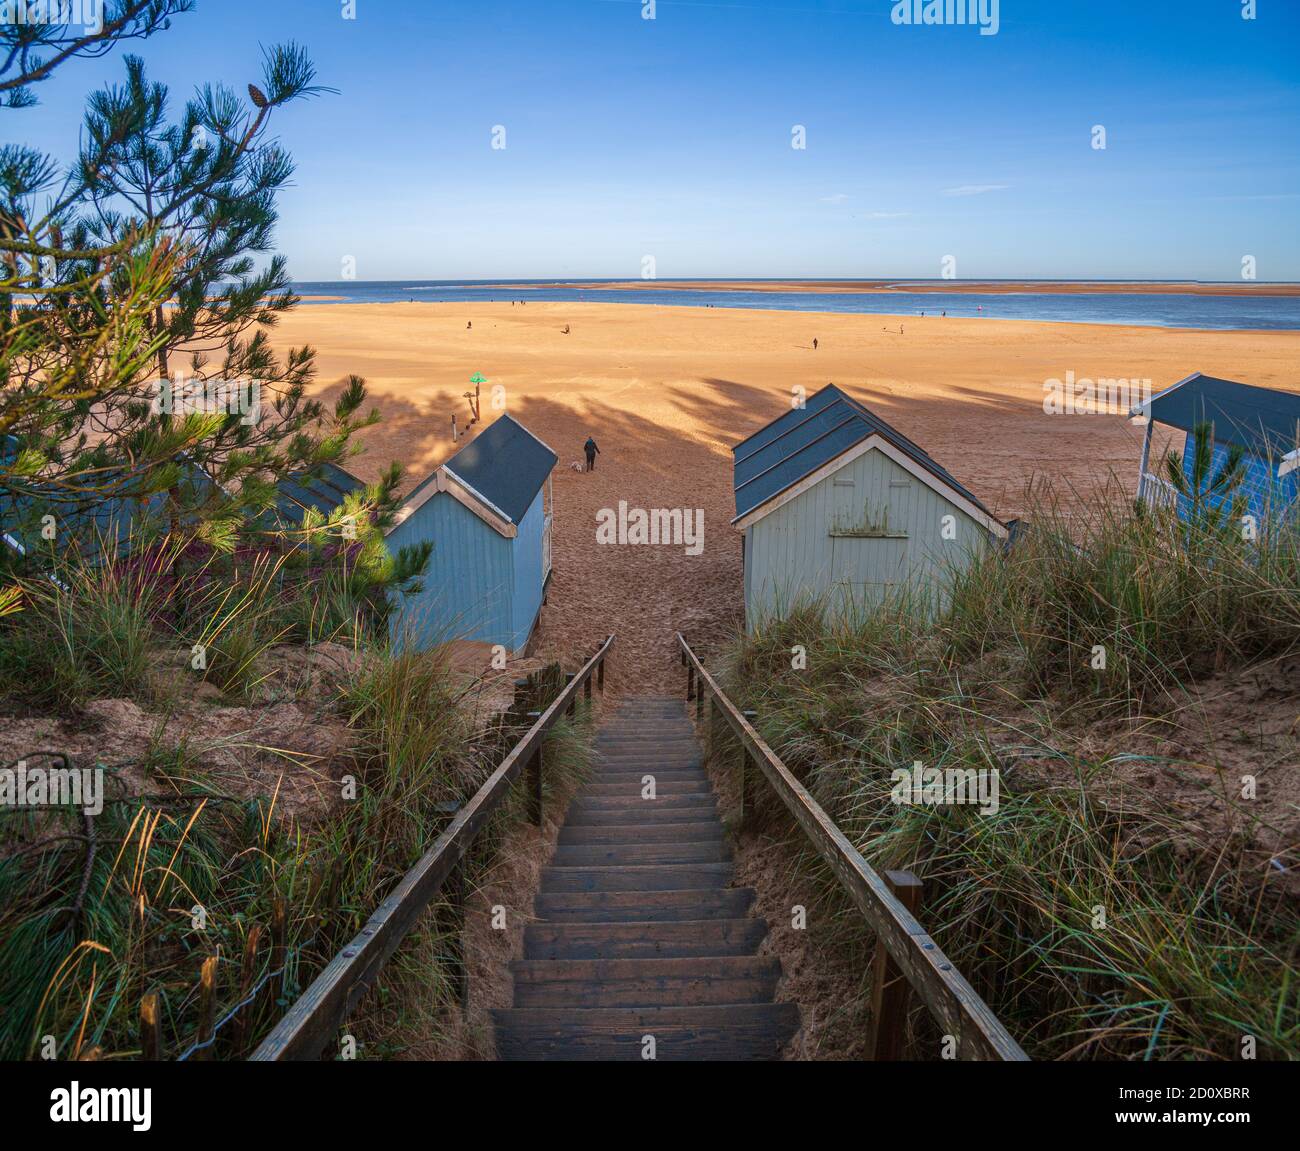 cabanes de plage et plage de sable à puits au bord de la mer sur la côte nord de norfolk royaume-uni hiver soleil angleterre Banque D'Images